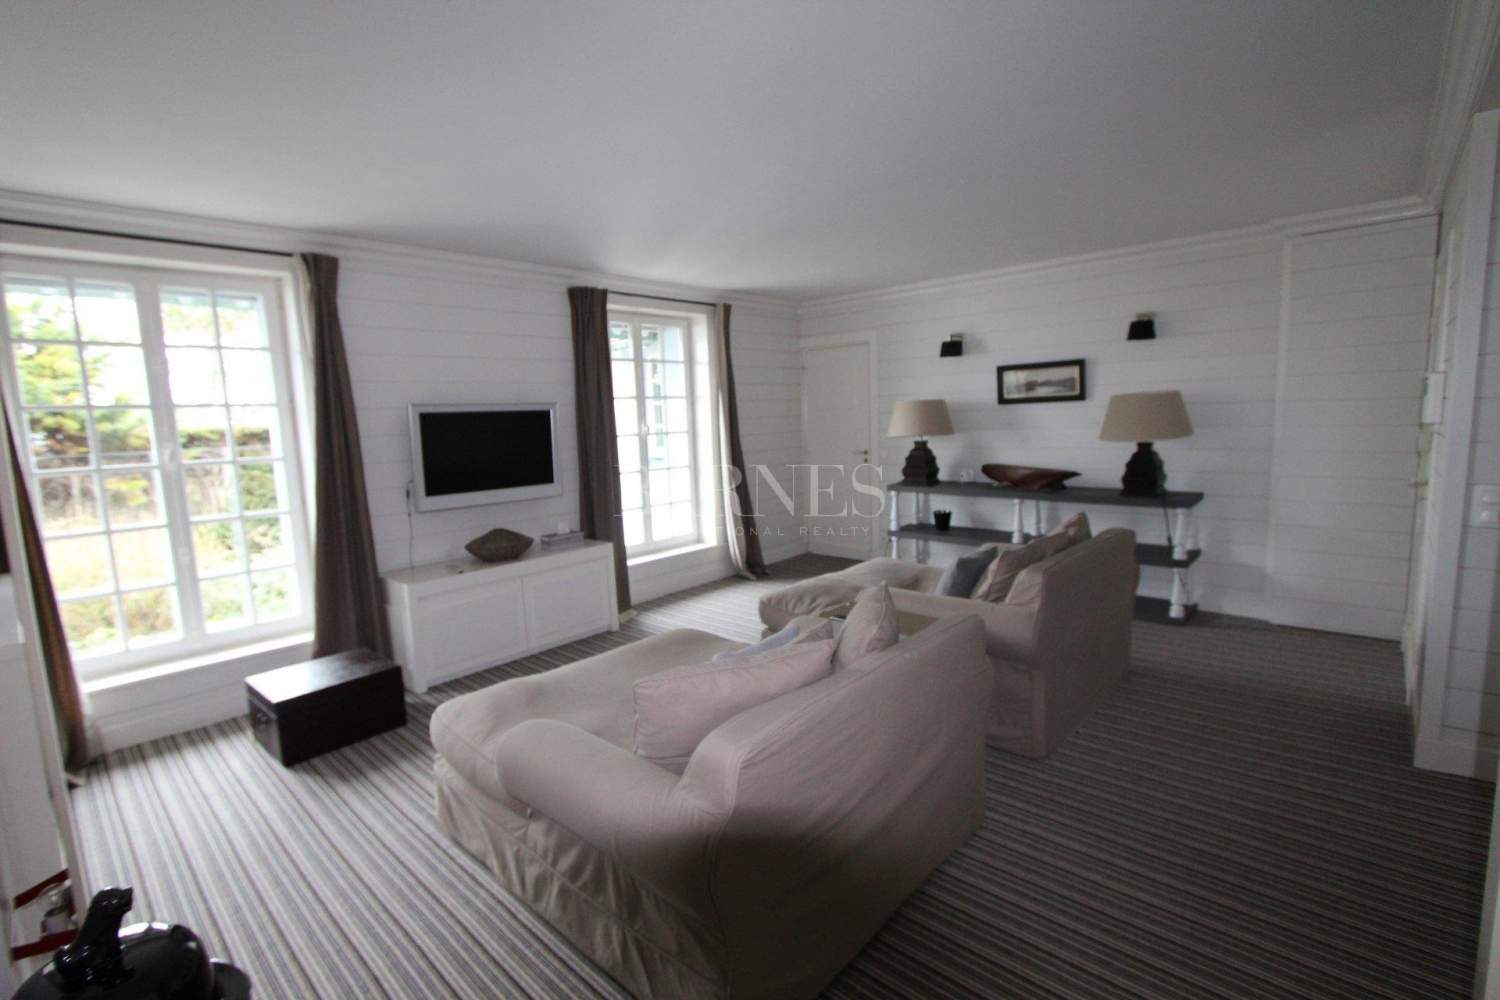 Proche Deauville - Propriété d'exception - 7 chambres - Piscine - accès direct plage picture 19